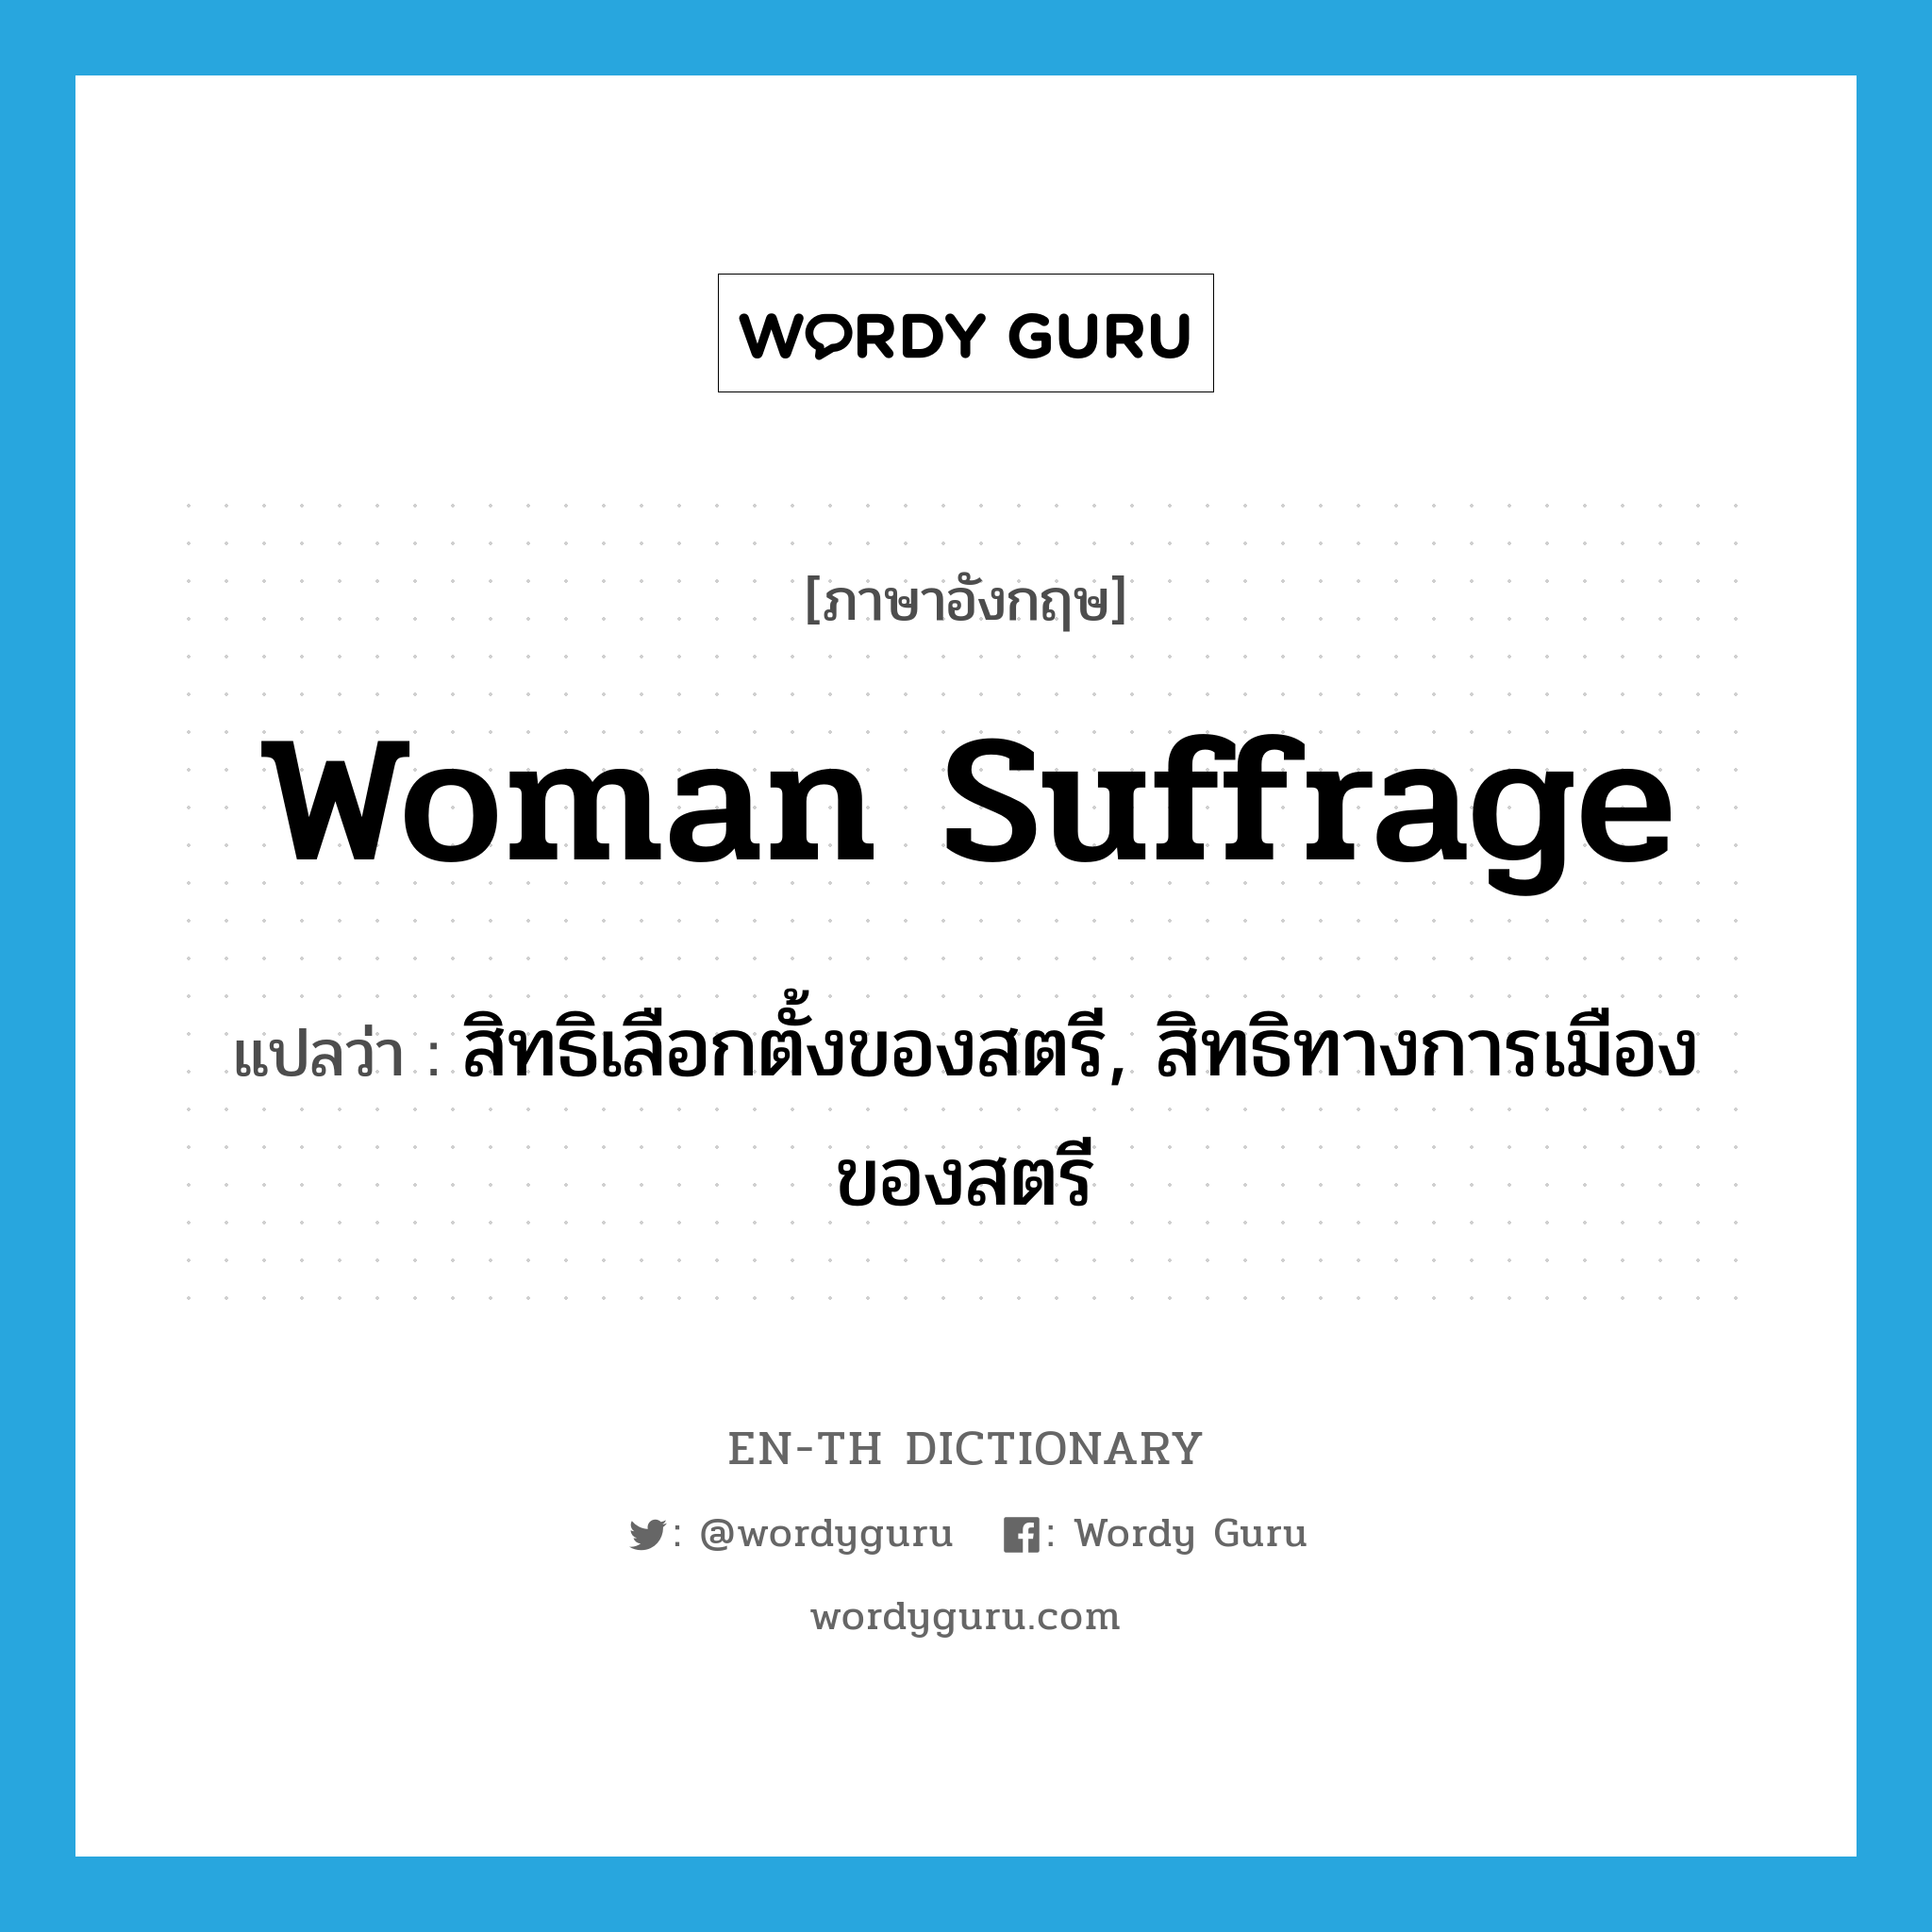 woman suffrage แปลว่า?, คำศัพท์ภาษาอังกฤษ woman suffrage แปลว่า สิทธิเลือกตั้งของสตรี, สิทธิทางการเมืองของสตรี ประเภท N หมวด N